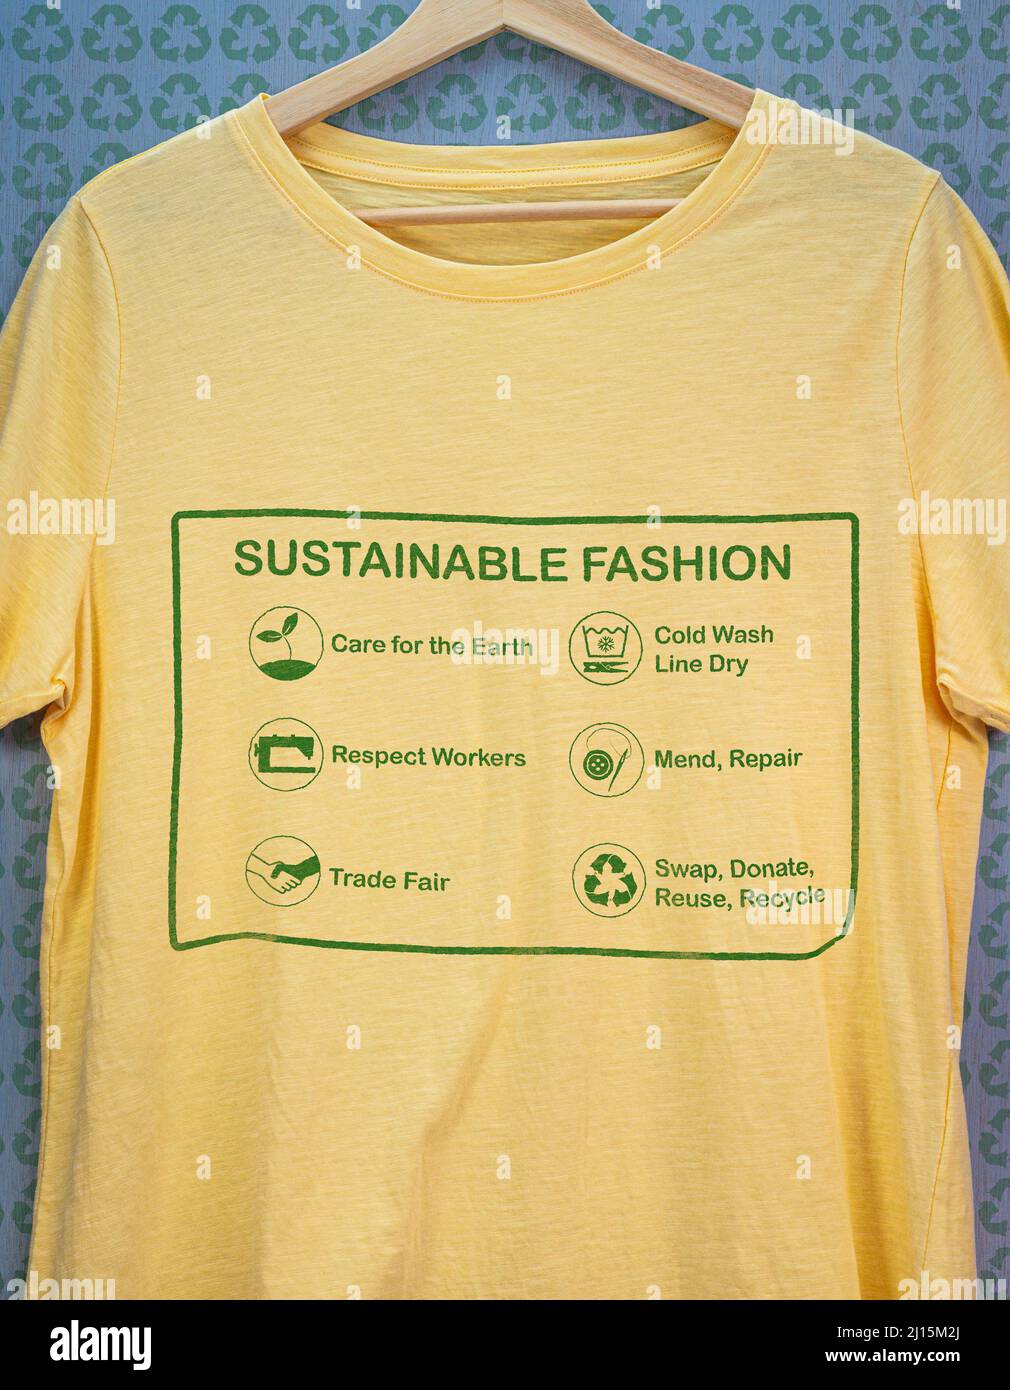 Camiseta en percha con etiqueta de moda sostenible, cuidado de la tierra, respeto por los trabajadores, feria comercial, reparar y reparar, reutilizar, intercambiar o donar Foto de stock